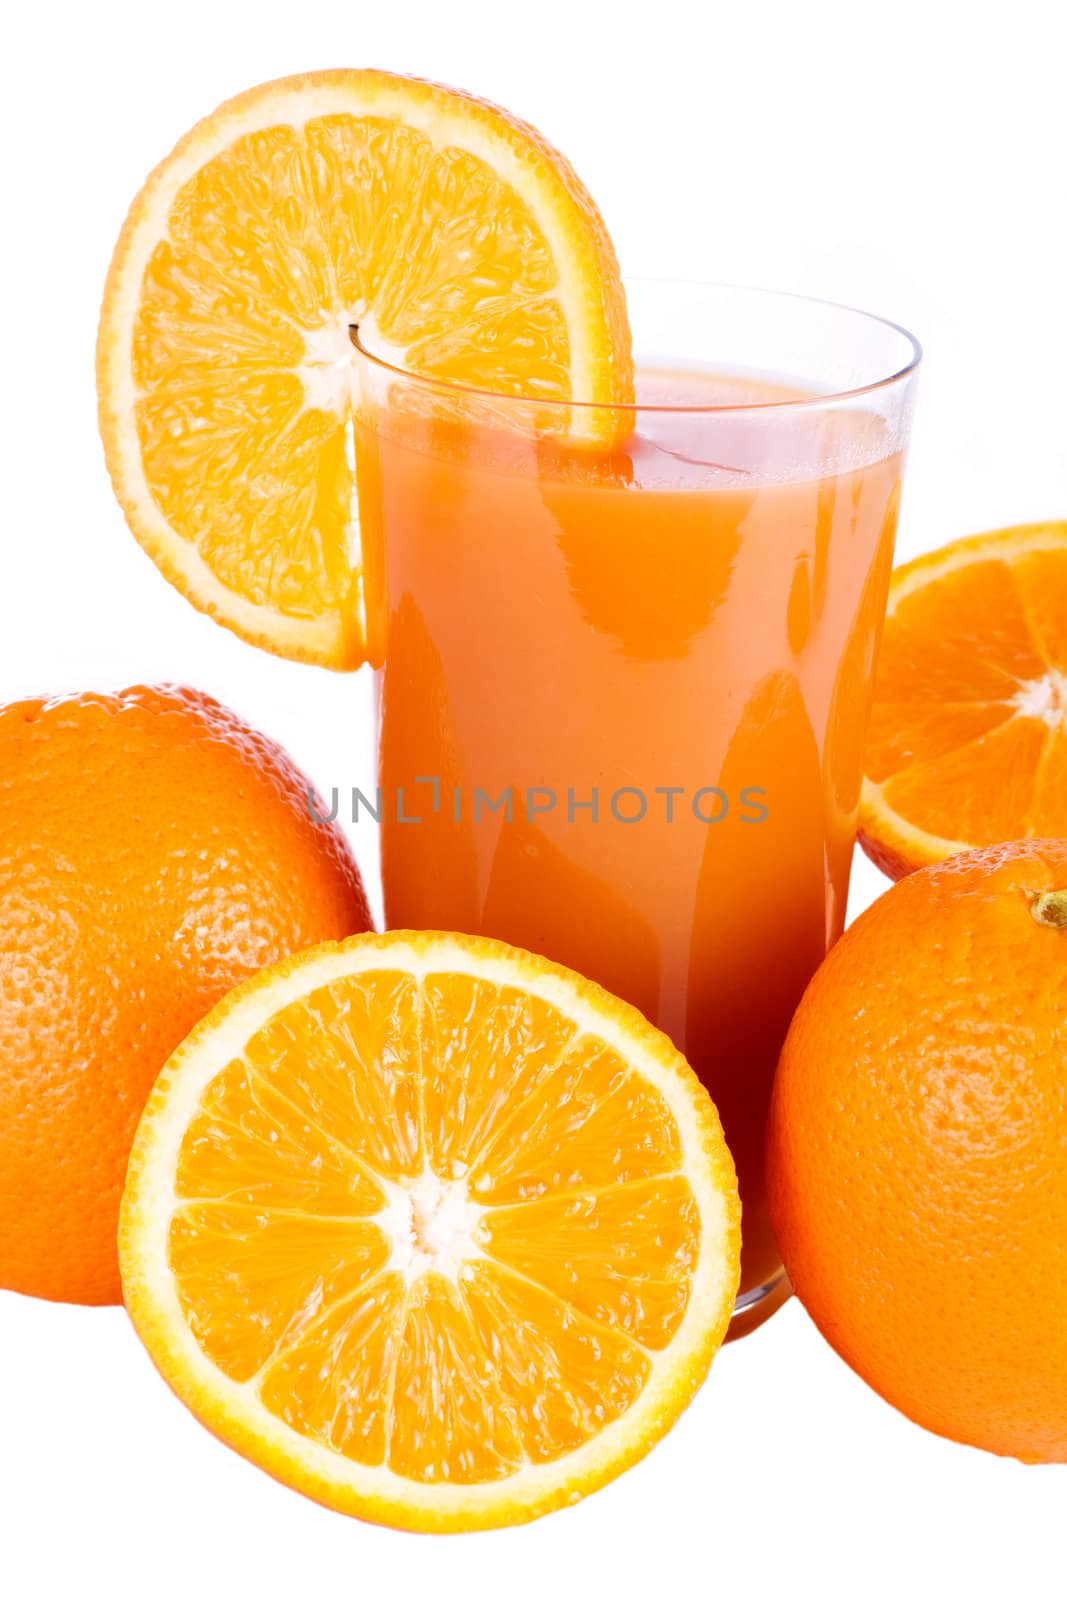 A glass of fresh orange juice with slice of orange isolated on white
